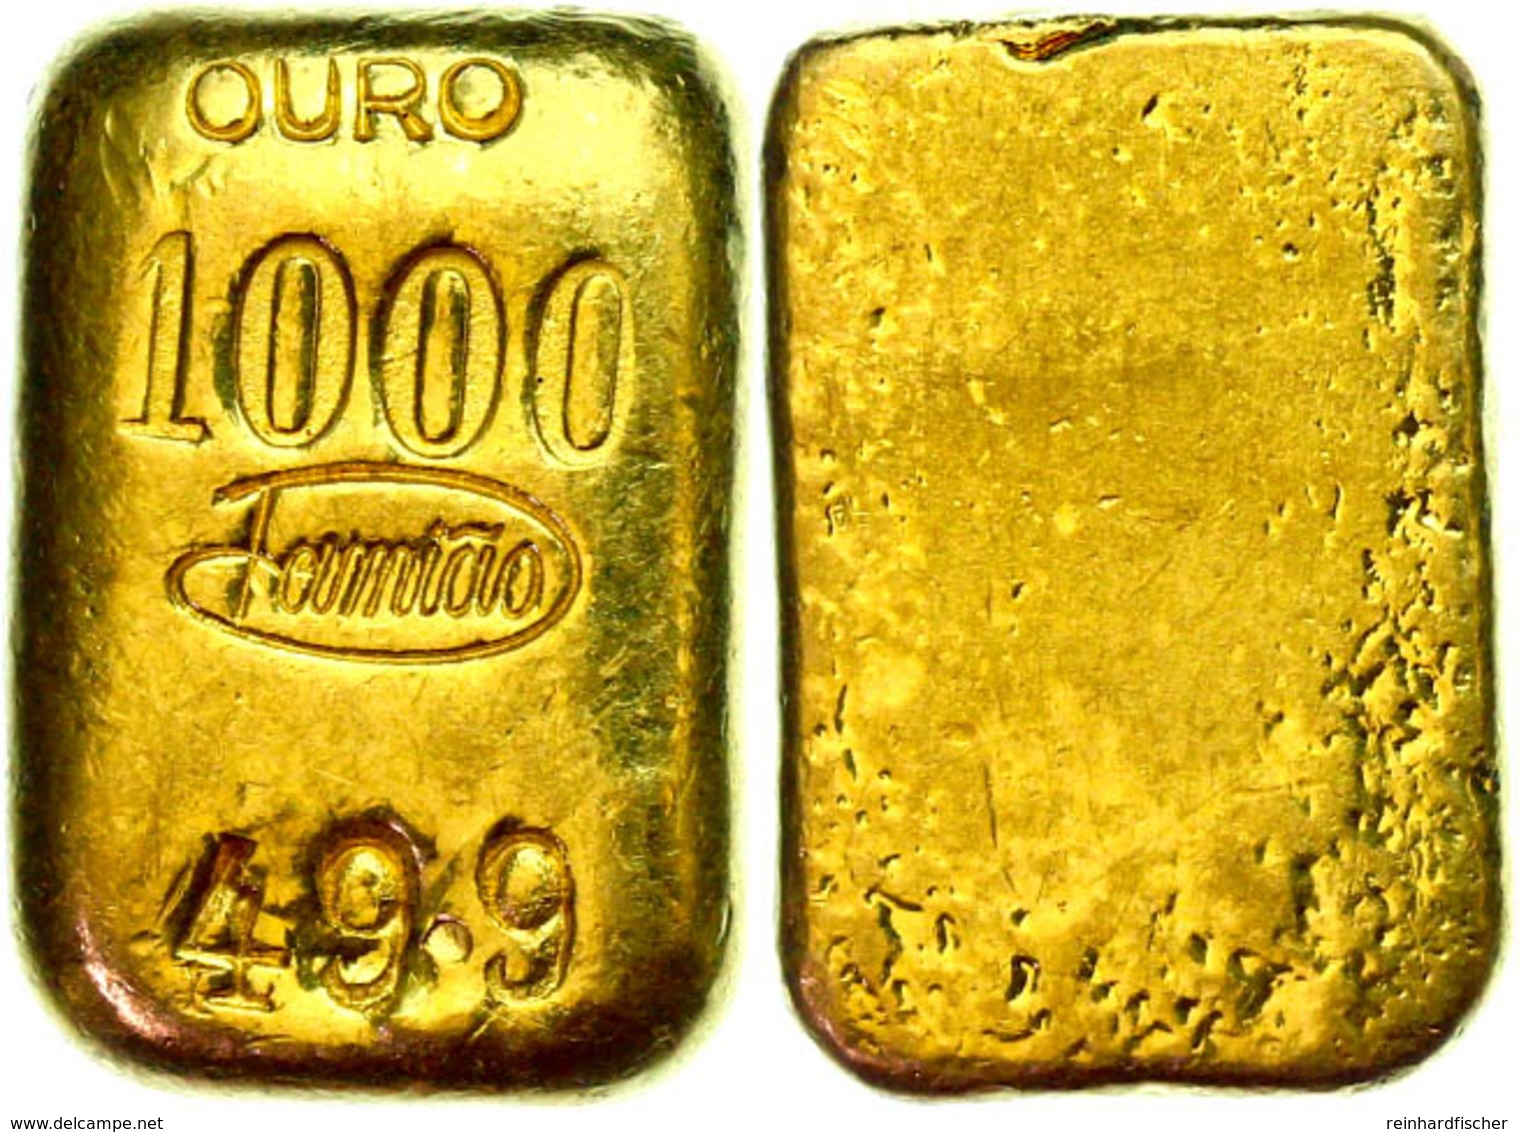 49,90g Goldbarren Der Firma Famiao, Kleine Kratzer. - Portugal